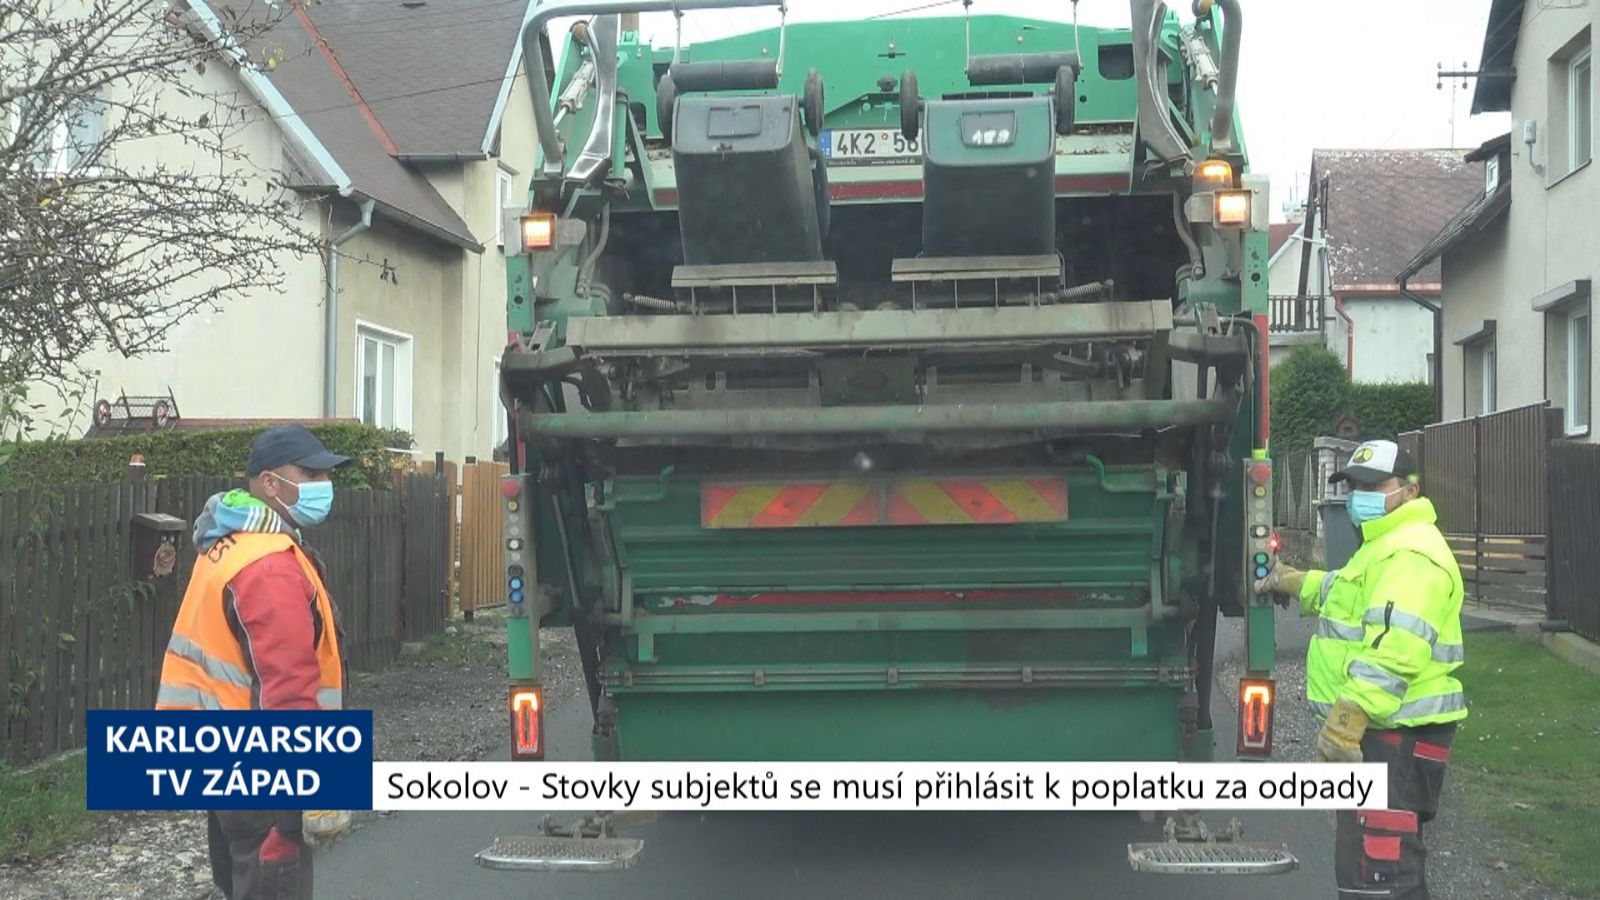 Sokolov: Stovky subjektů se musí přihlásit k poplatku za odpady (TV Západ)